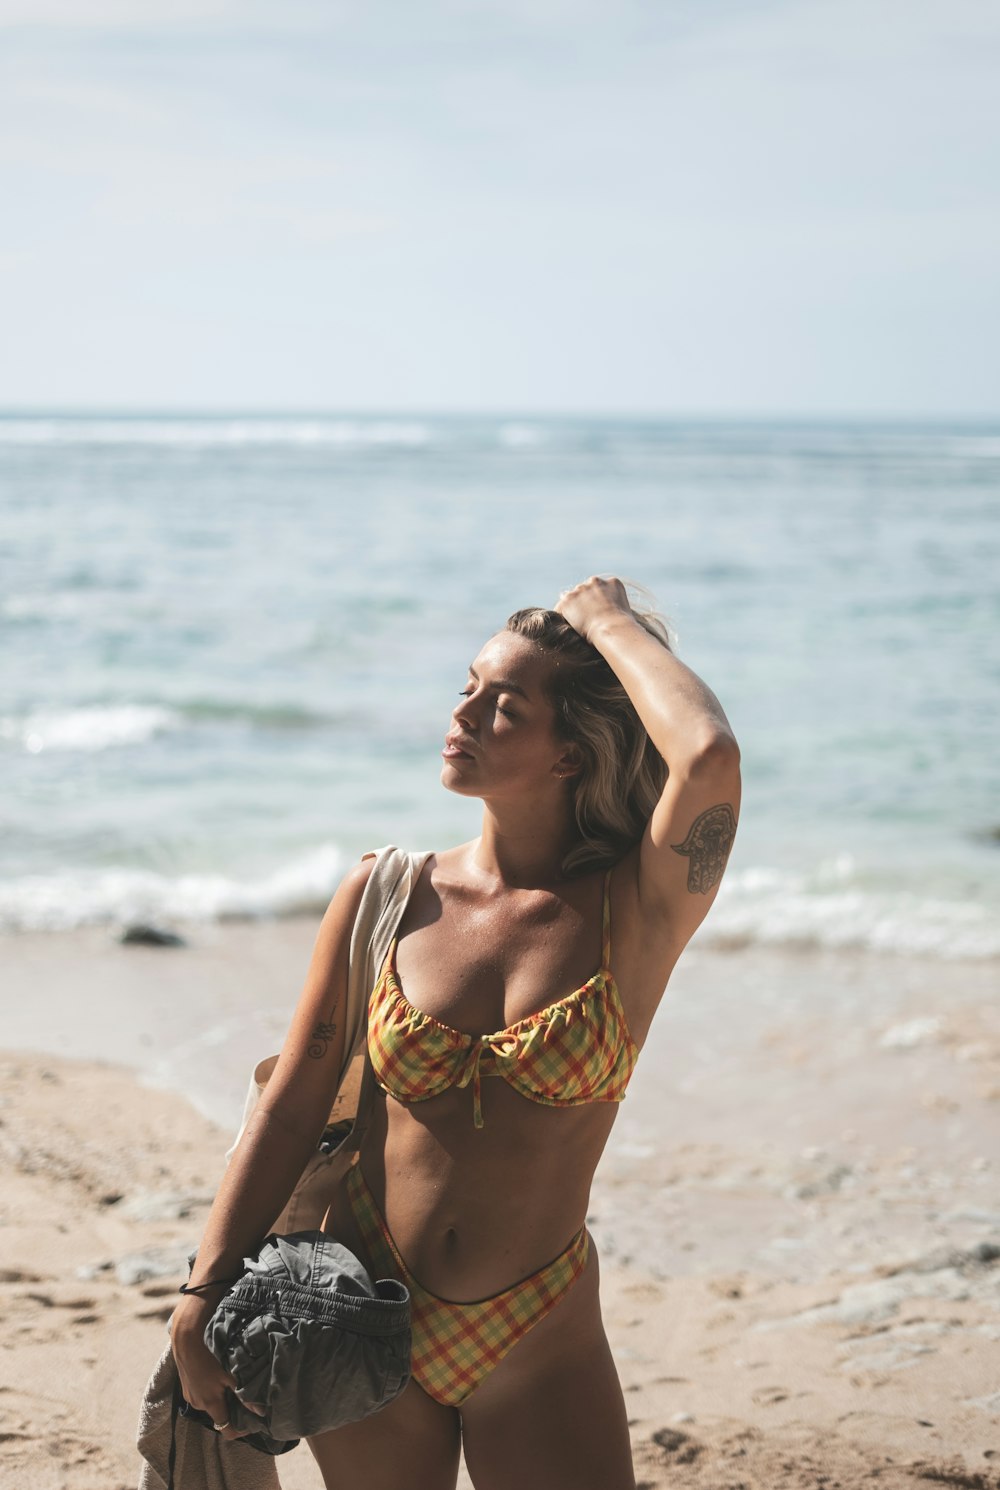 Una mujer en bikini parada en una playa